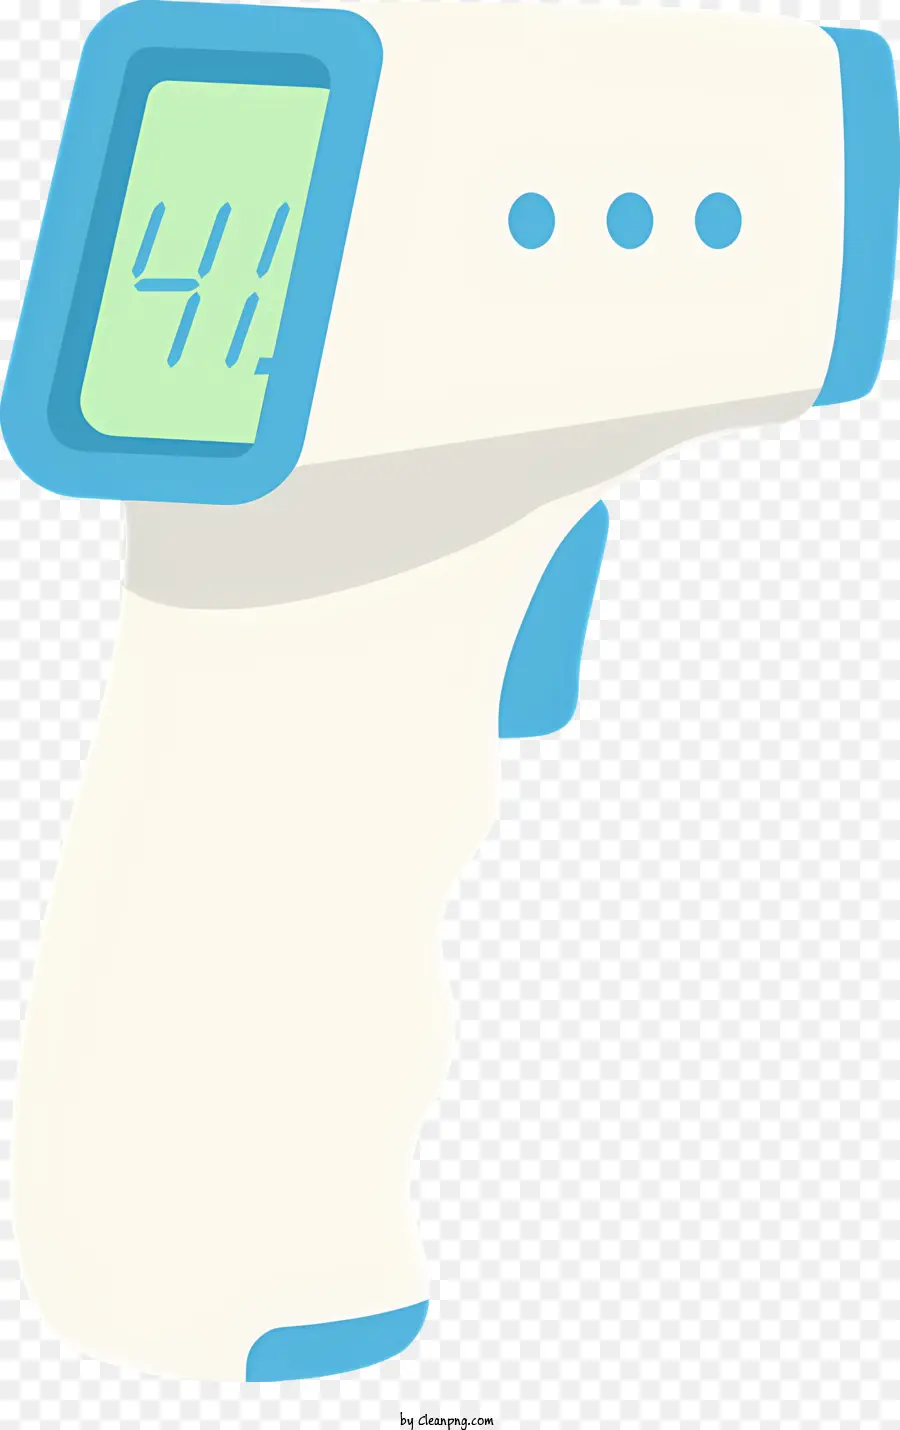 Display a temperatura del termometro digitale blu e bianco a forma rettangolare portatile - Termometro digitale con display blu e bianco